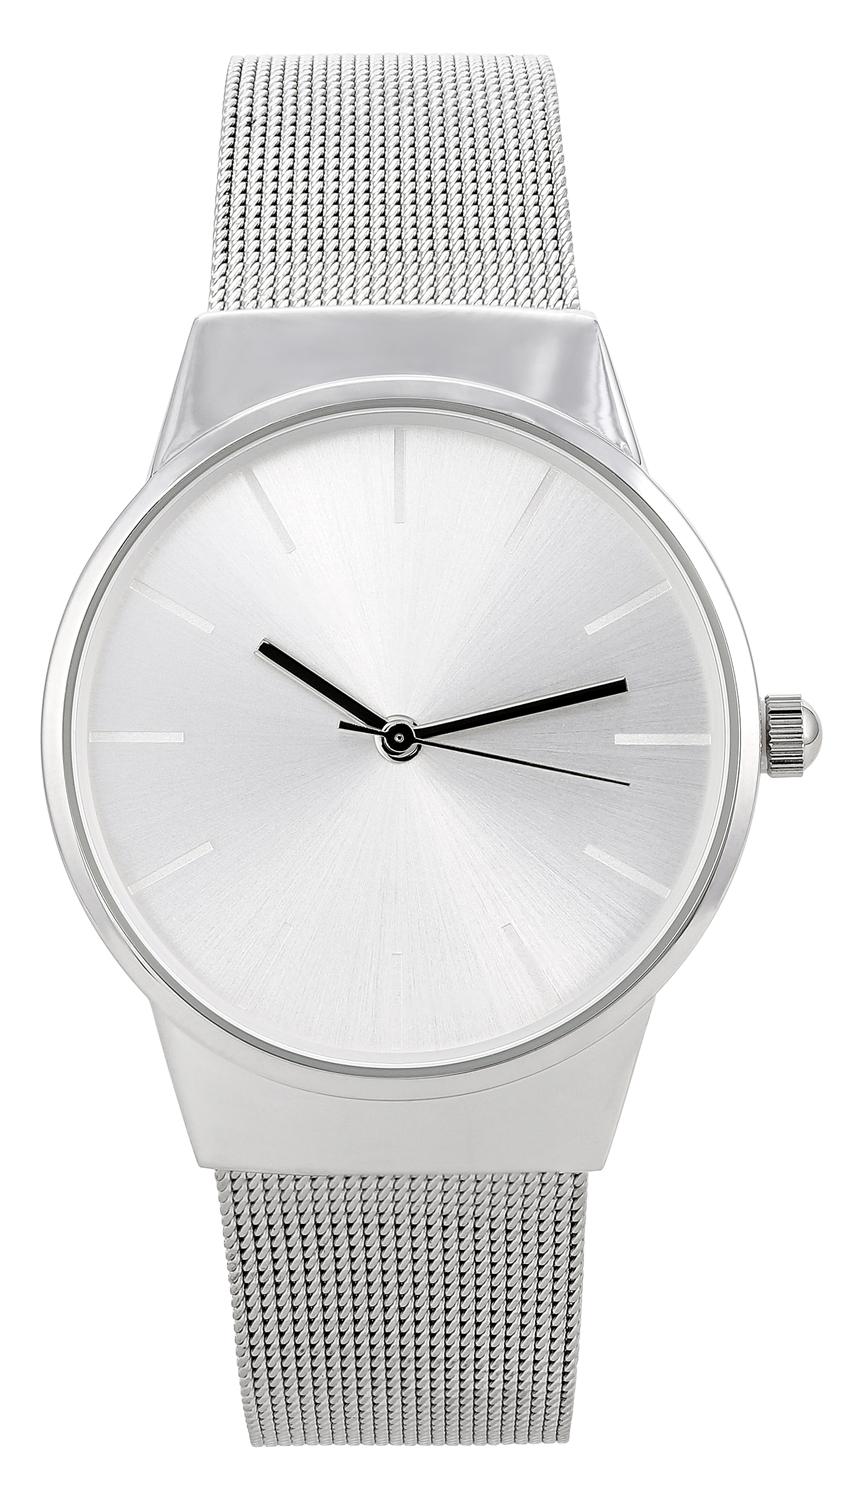 Watch - Silver Elegance